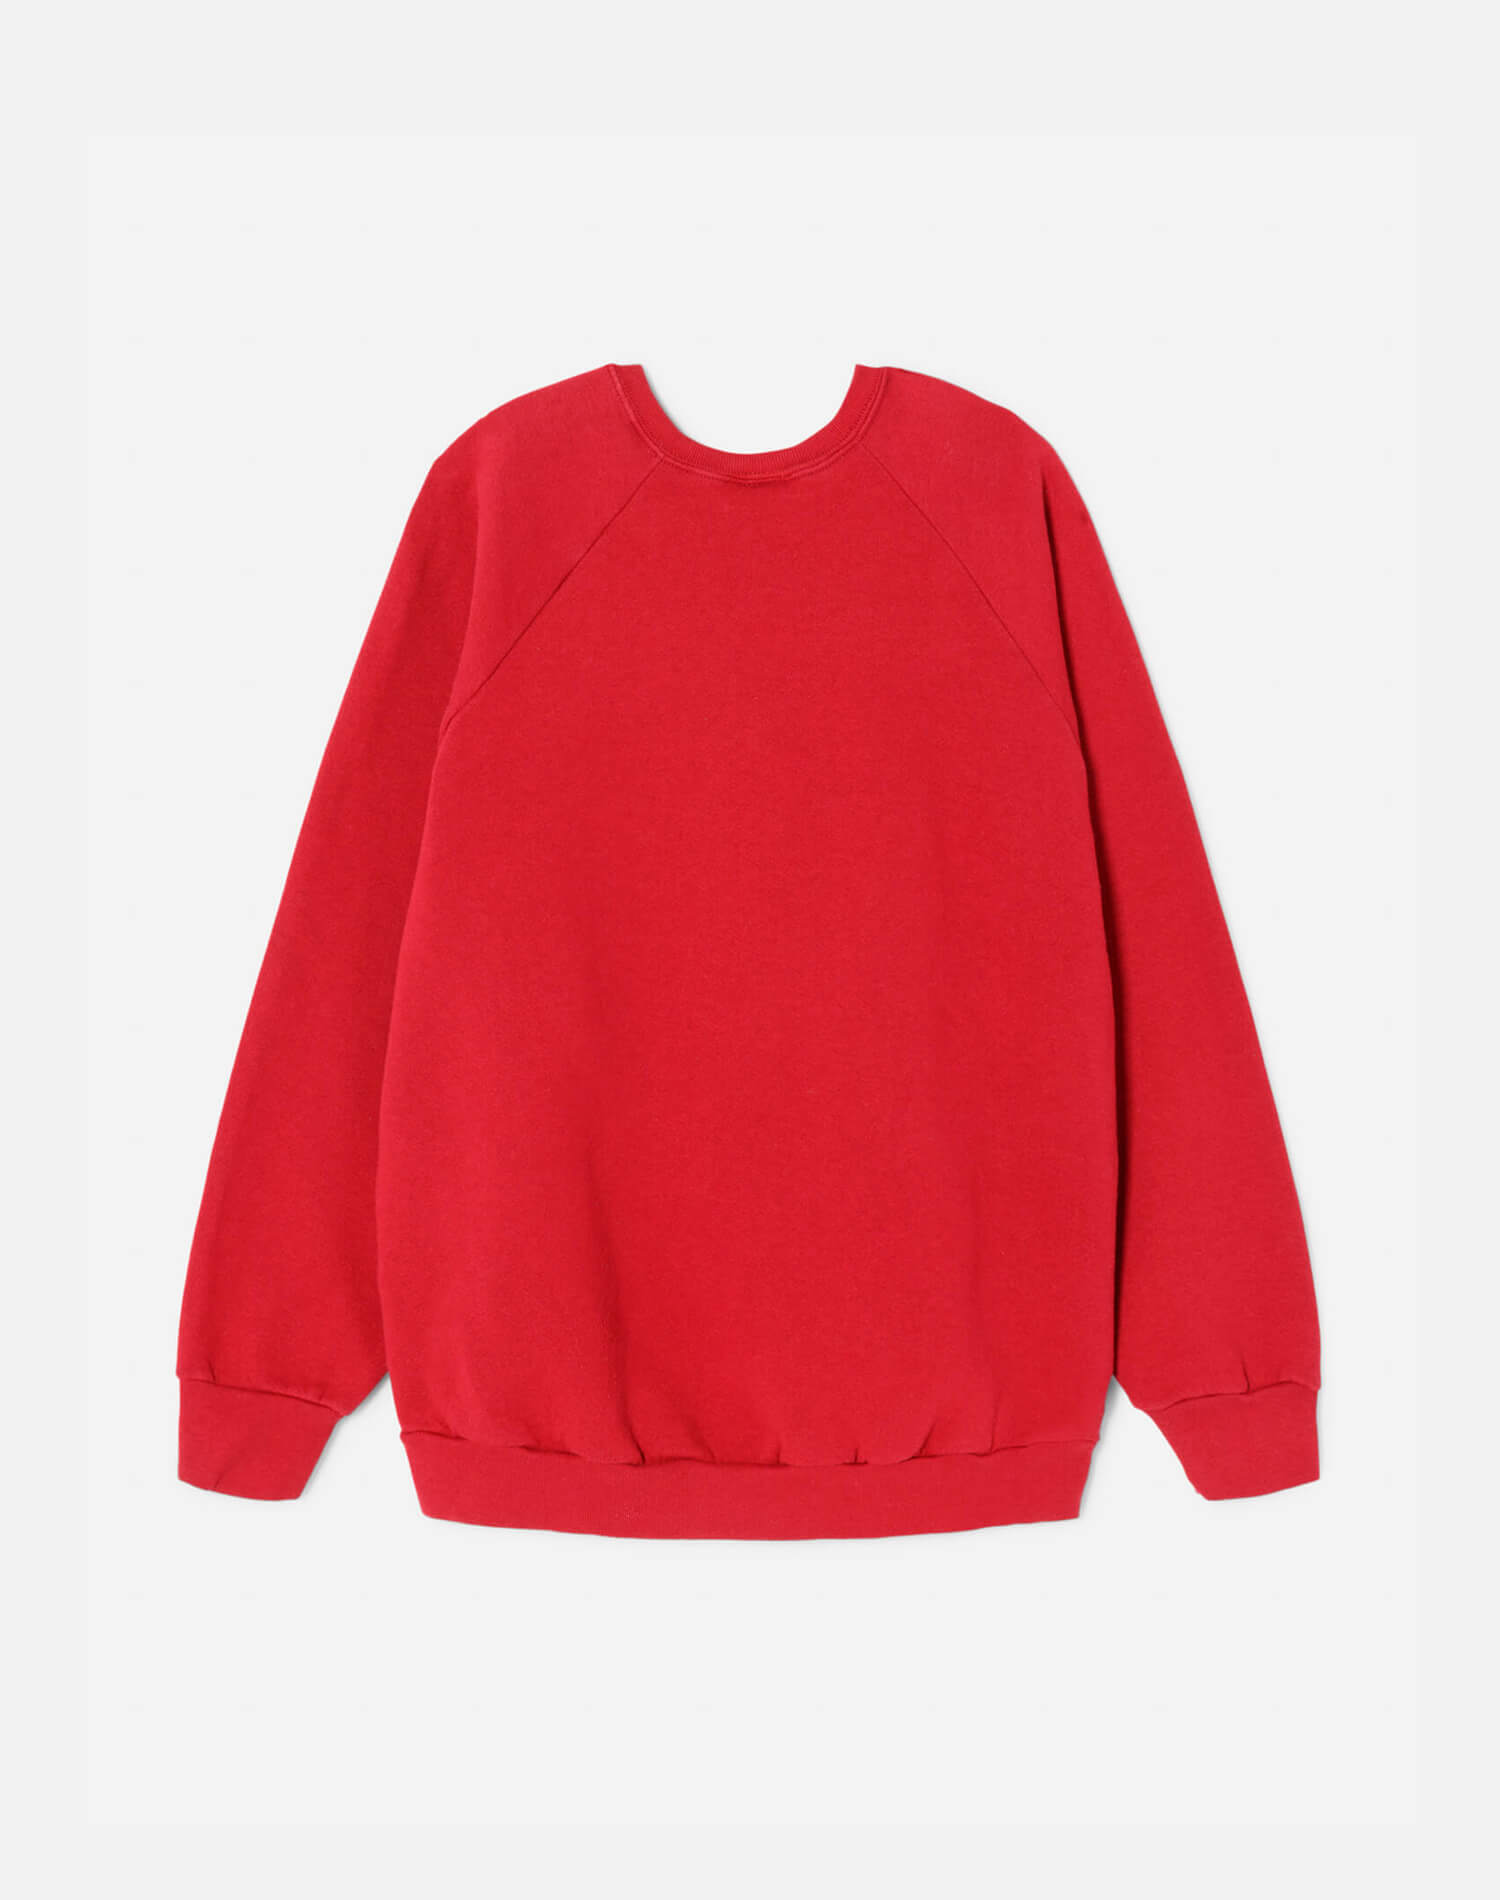 Upcycled "Montauk" Sweatshirt - Red